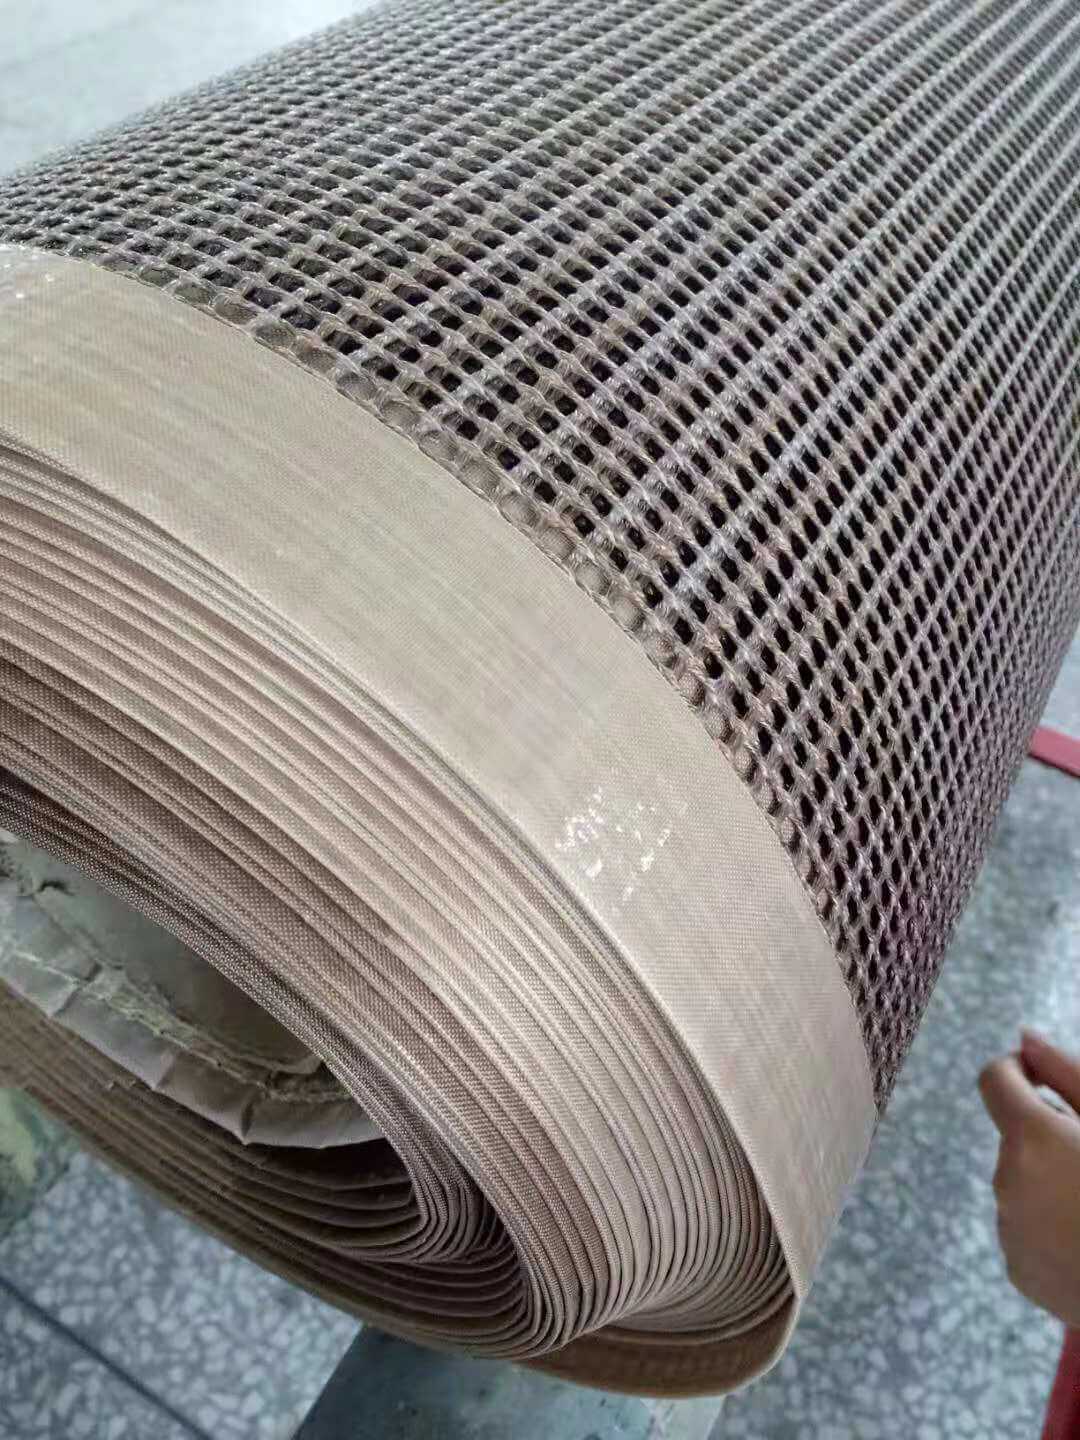 Teflon mesh conveyor belt